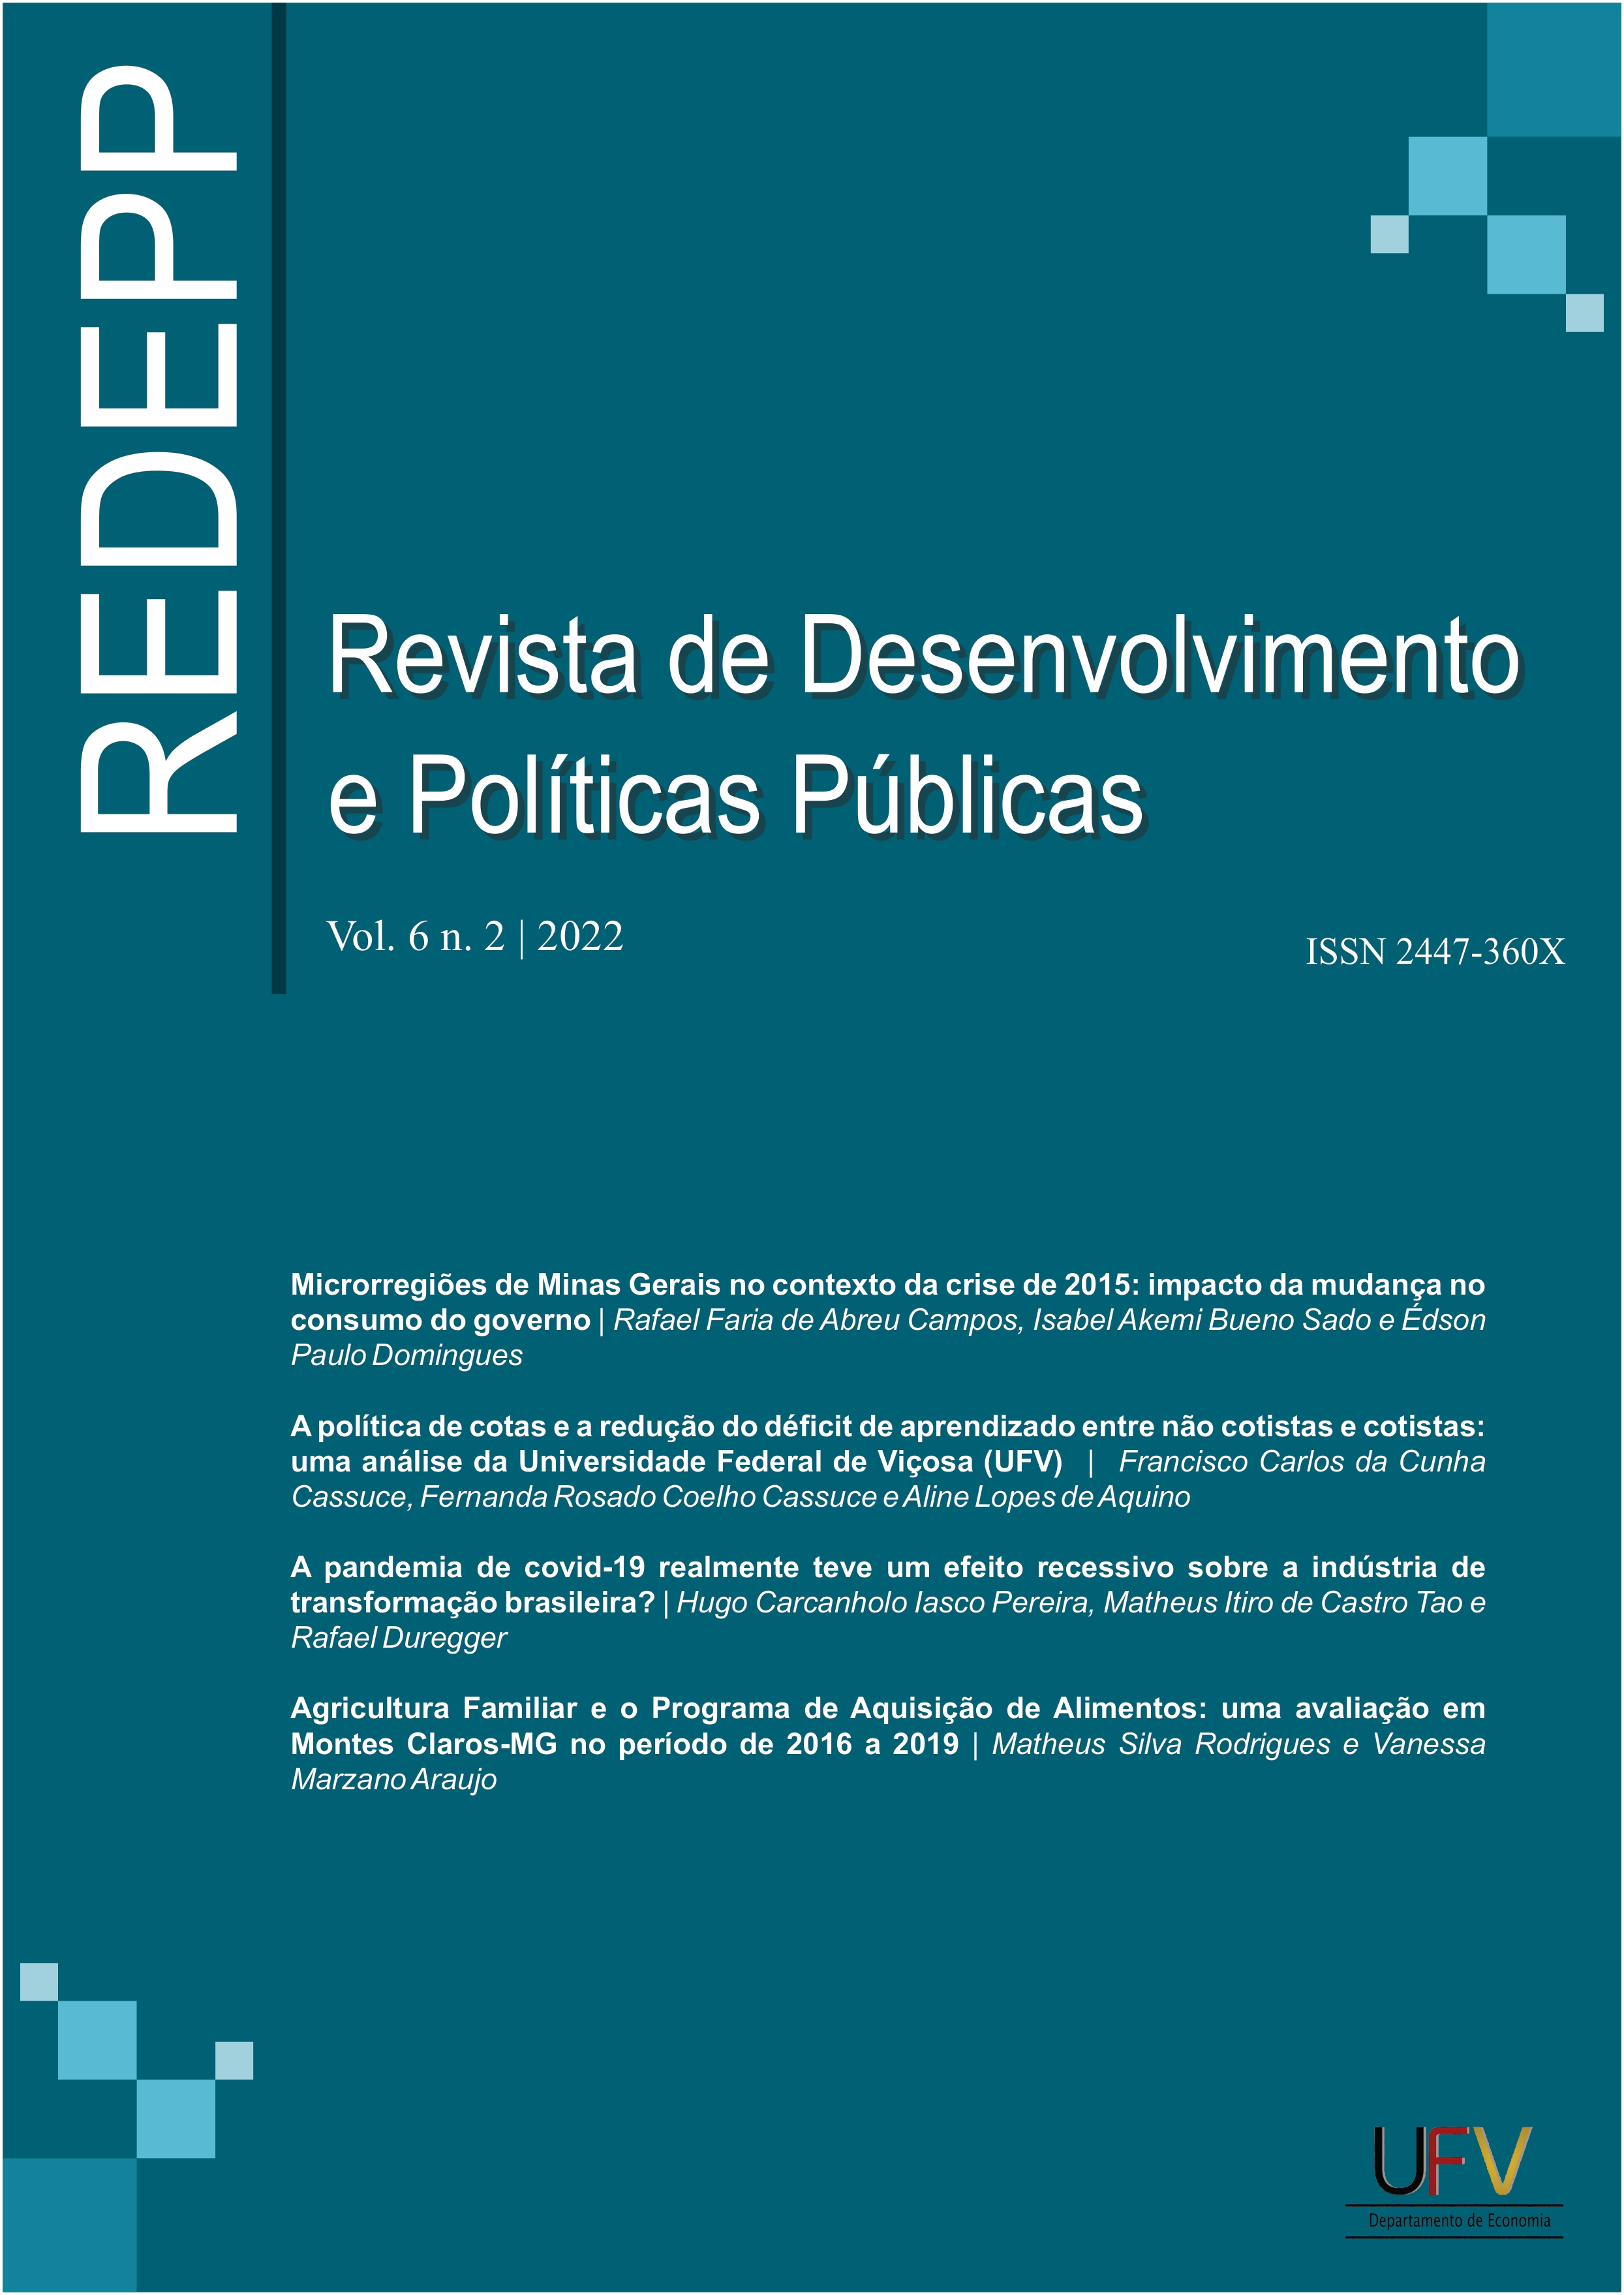 					Visualizar v. 6 n. 2 (2022): Revista de Desenvolvimento e Políticas Públicas [ISSN: 2447-360X]
				